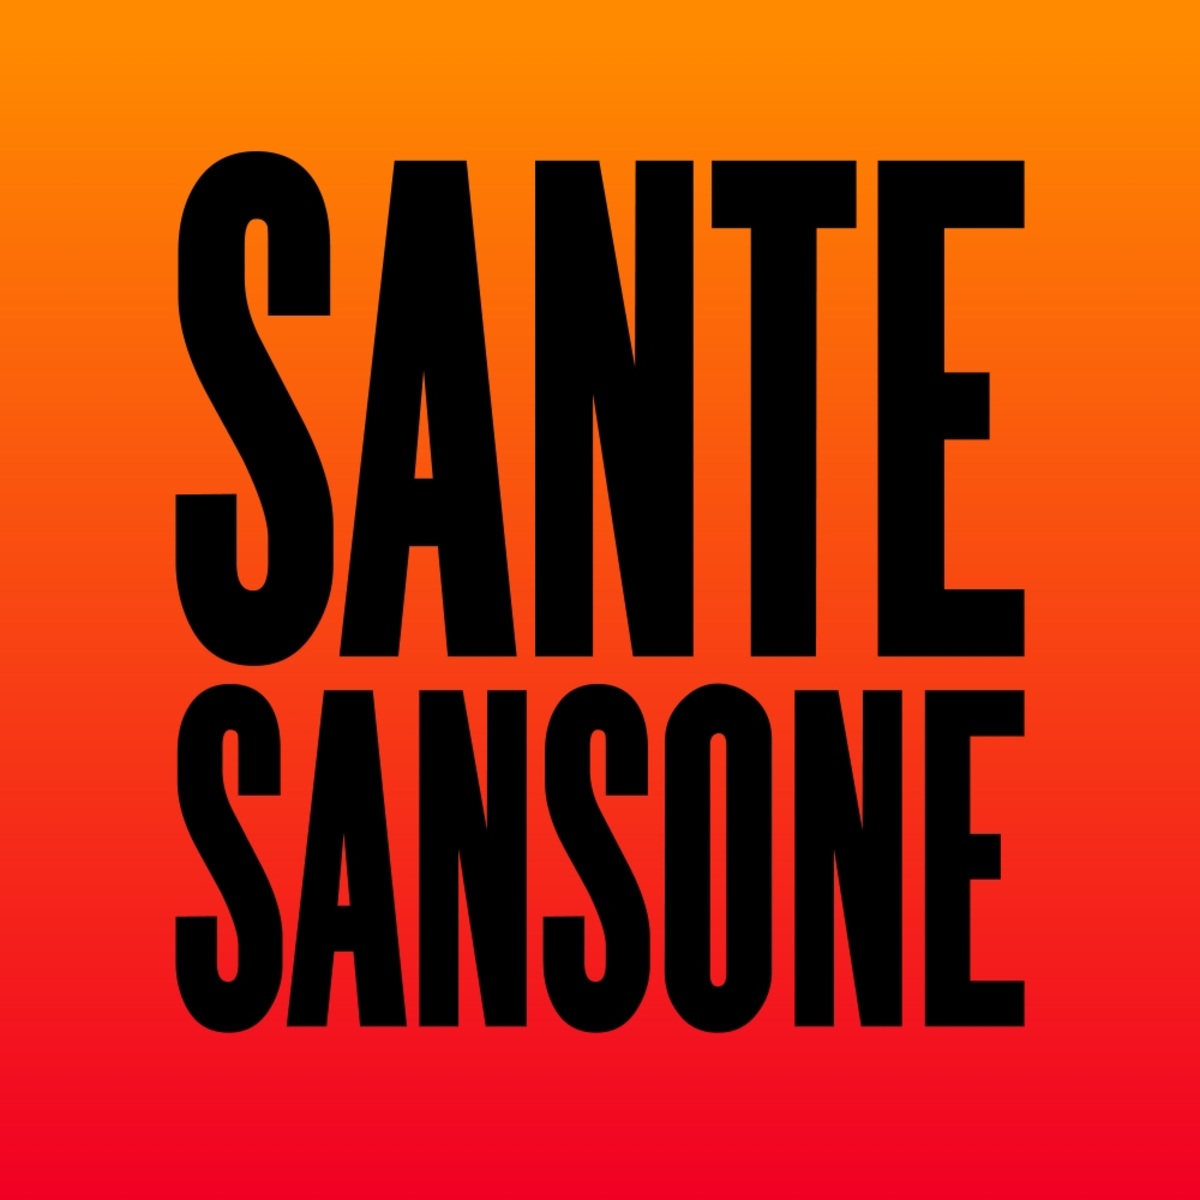 Sante Sansone - Open Space / Glasgow Underground